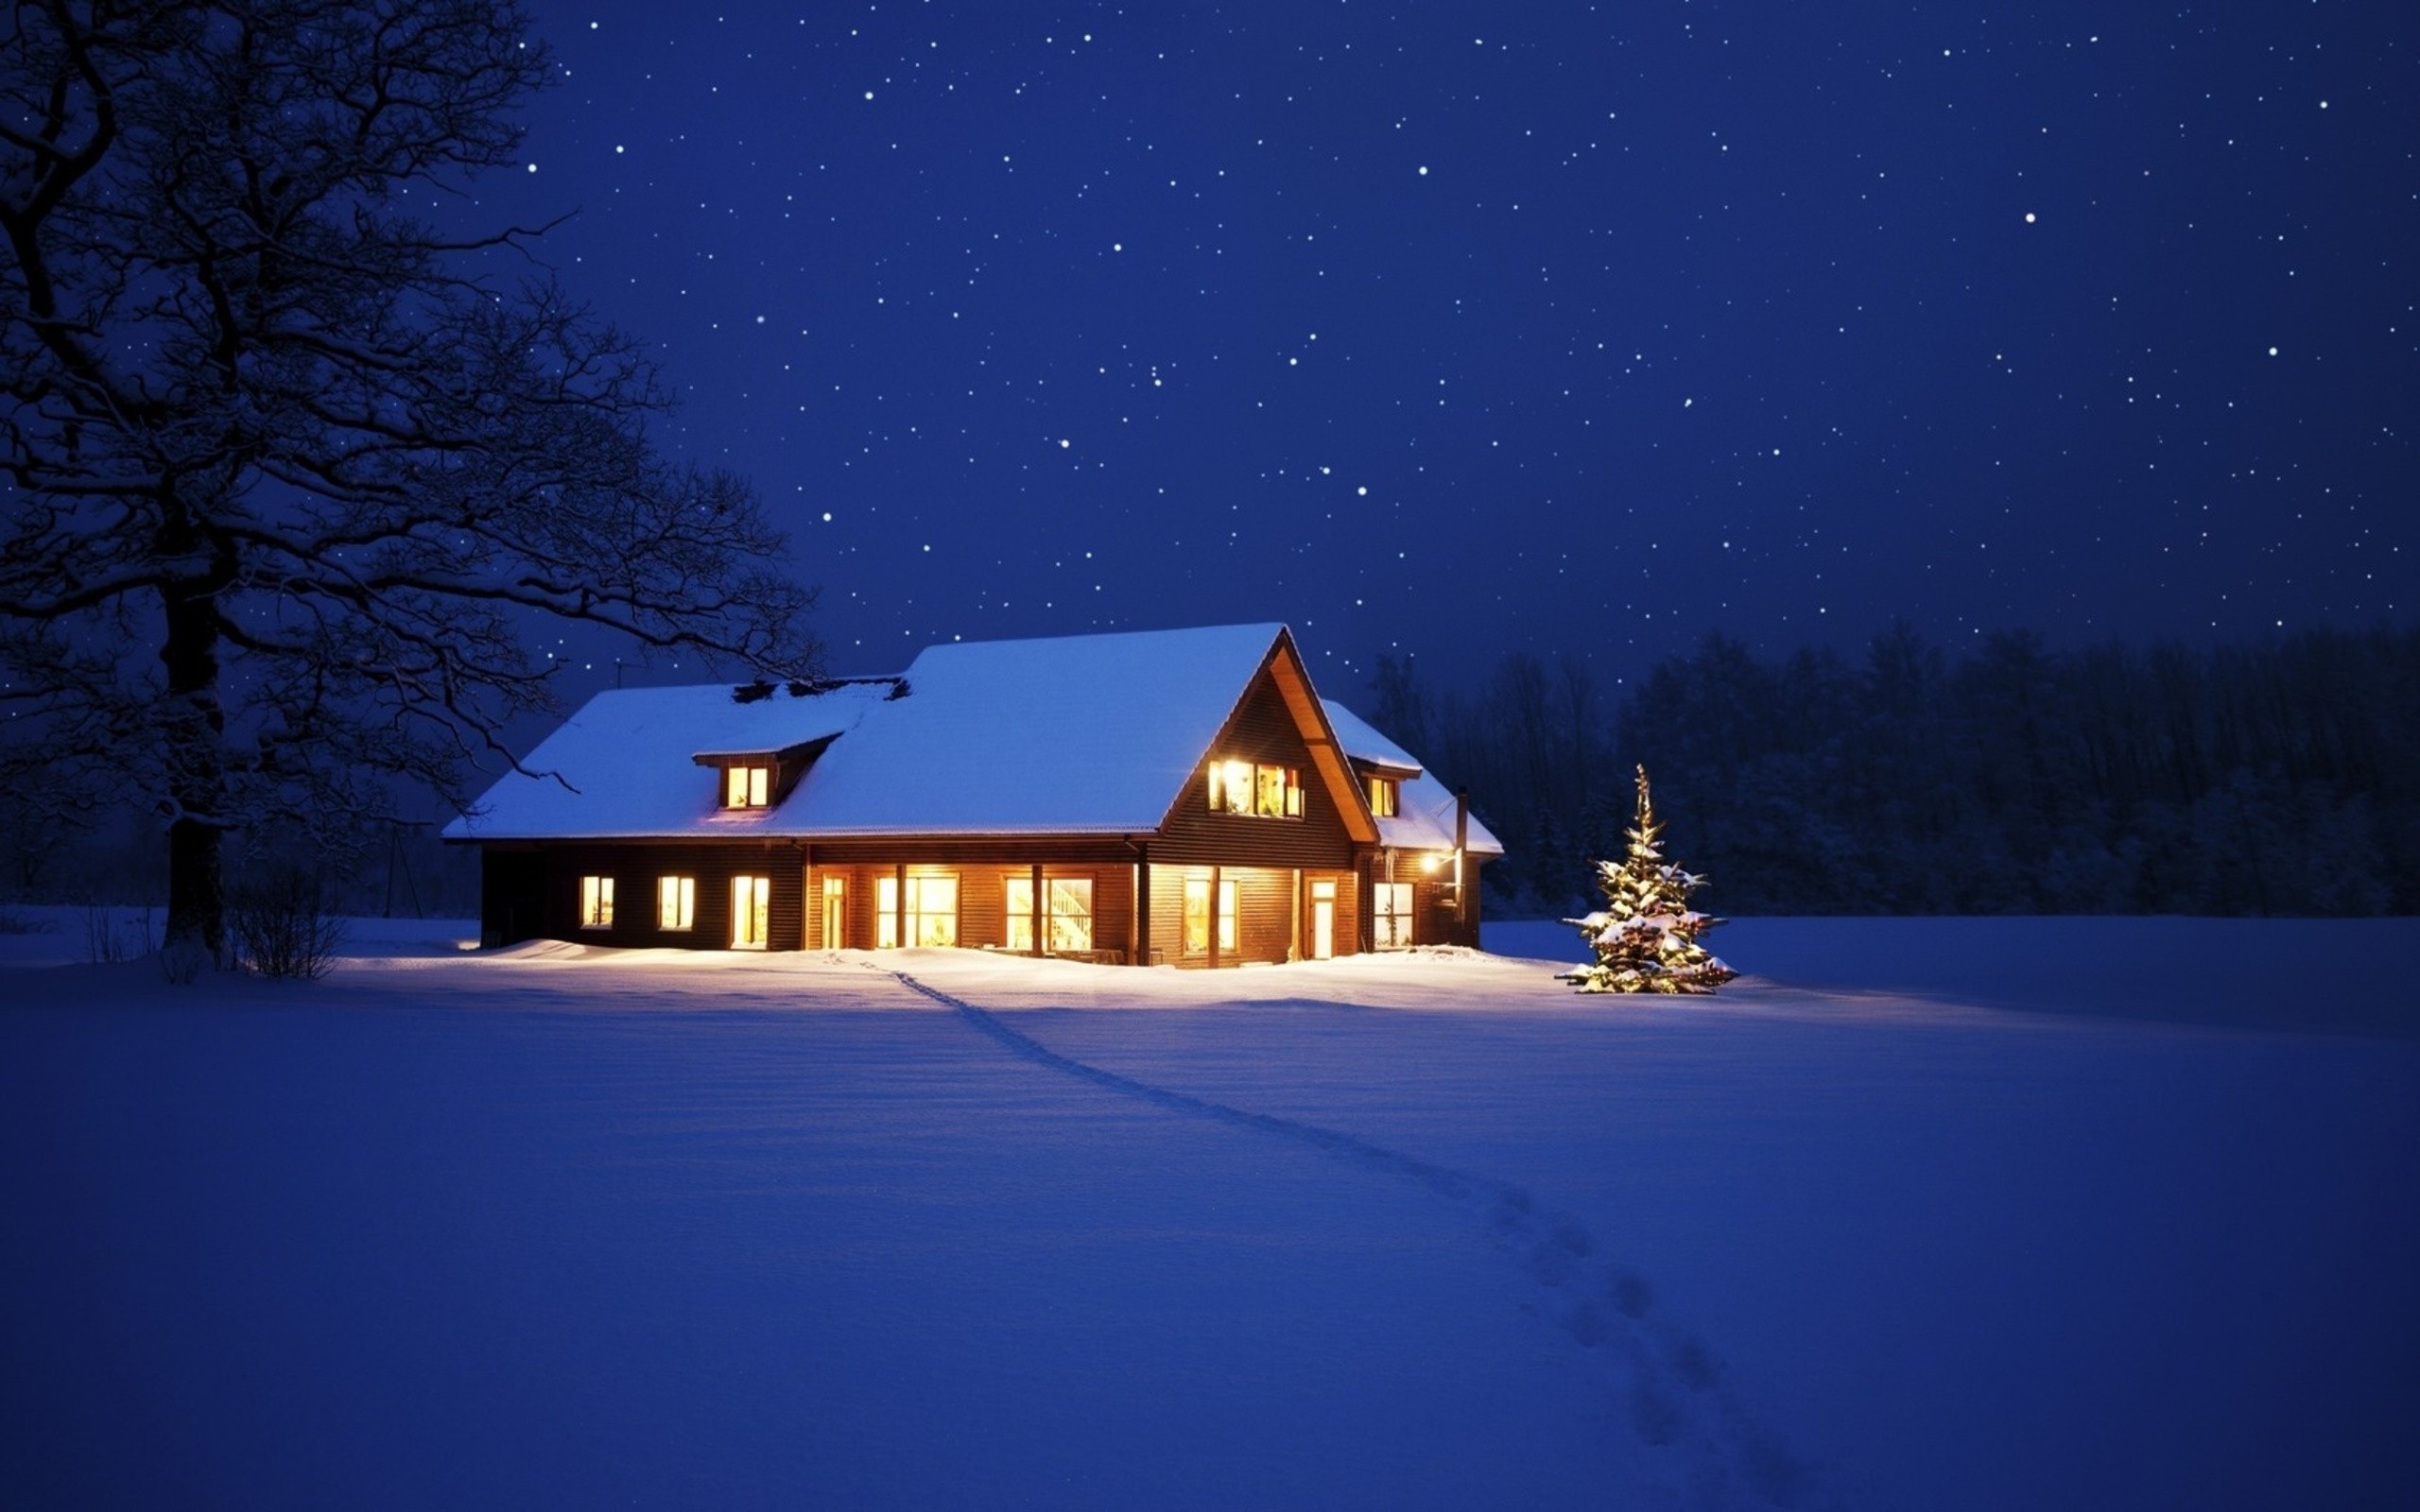 冬天夜晚高山雪景唯美桌面壁纸-壁纸图片大全